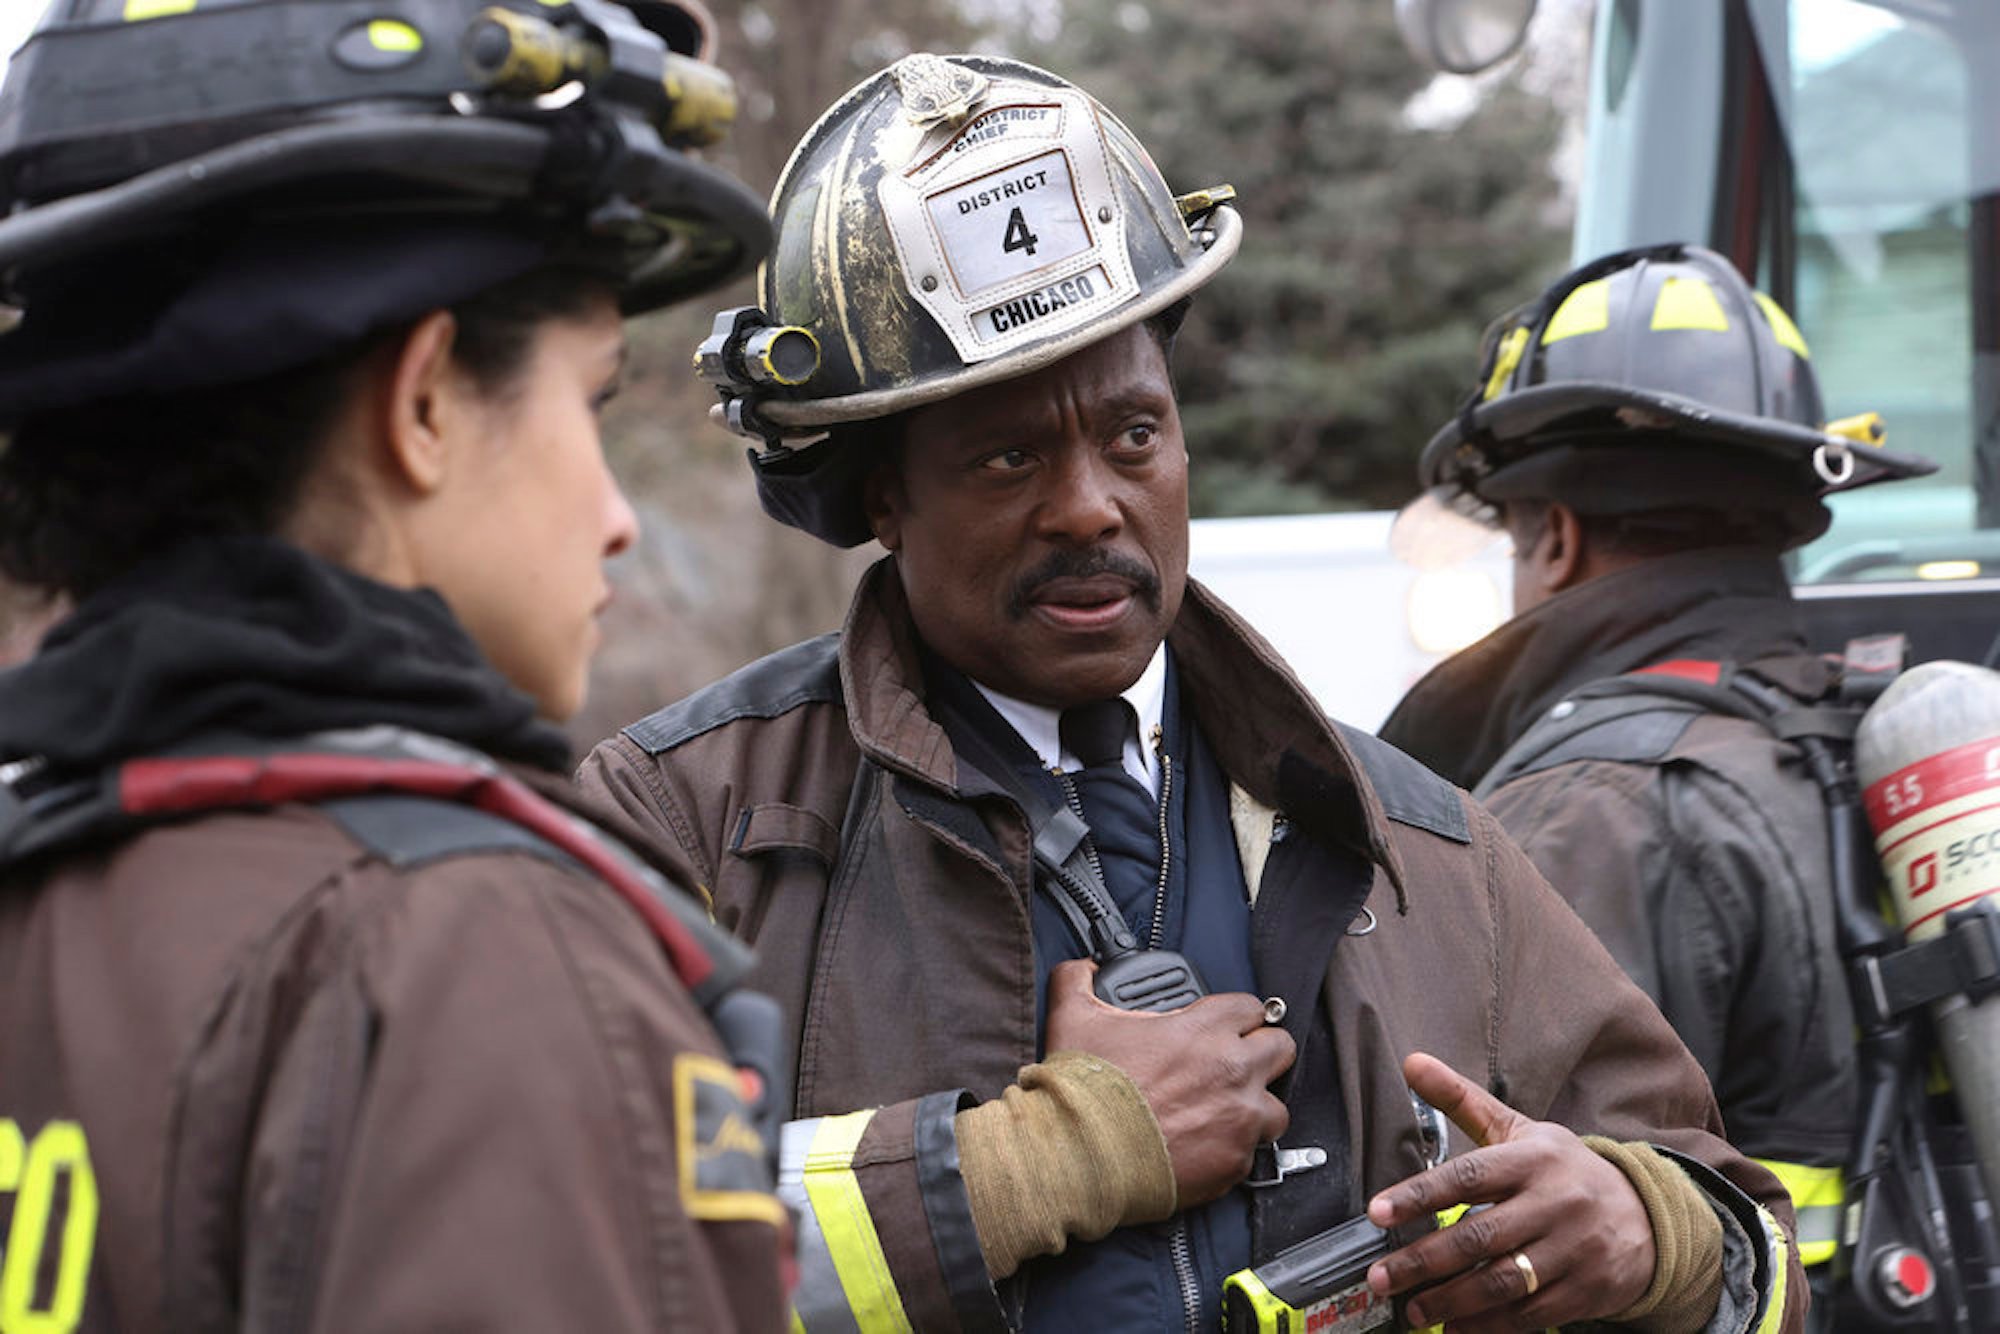 'Chicago Fire' Season 10 Episode 18 still of Wallace Boden in firefighting gear